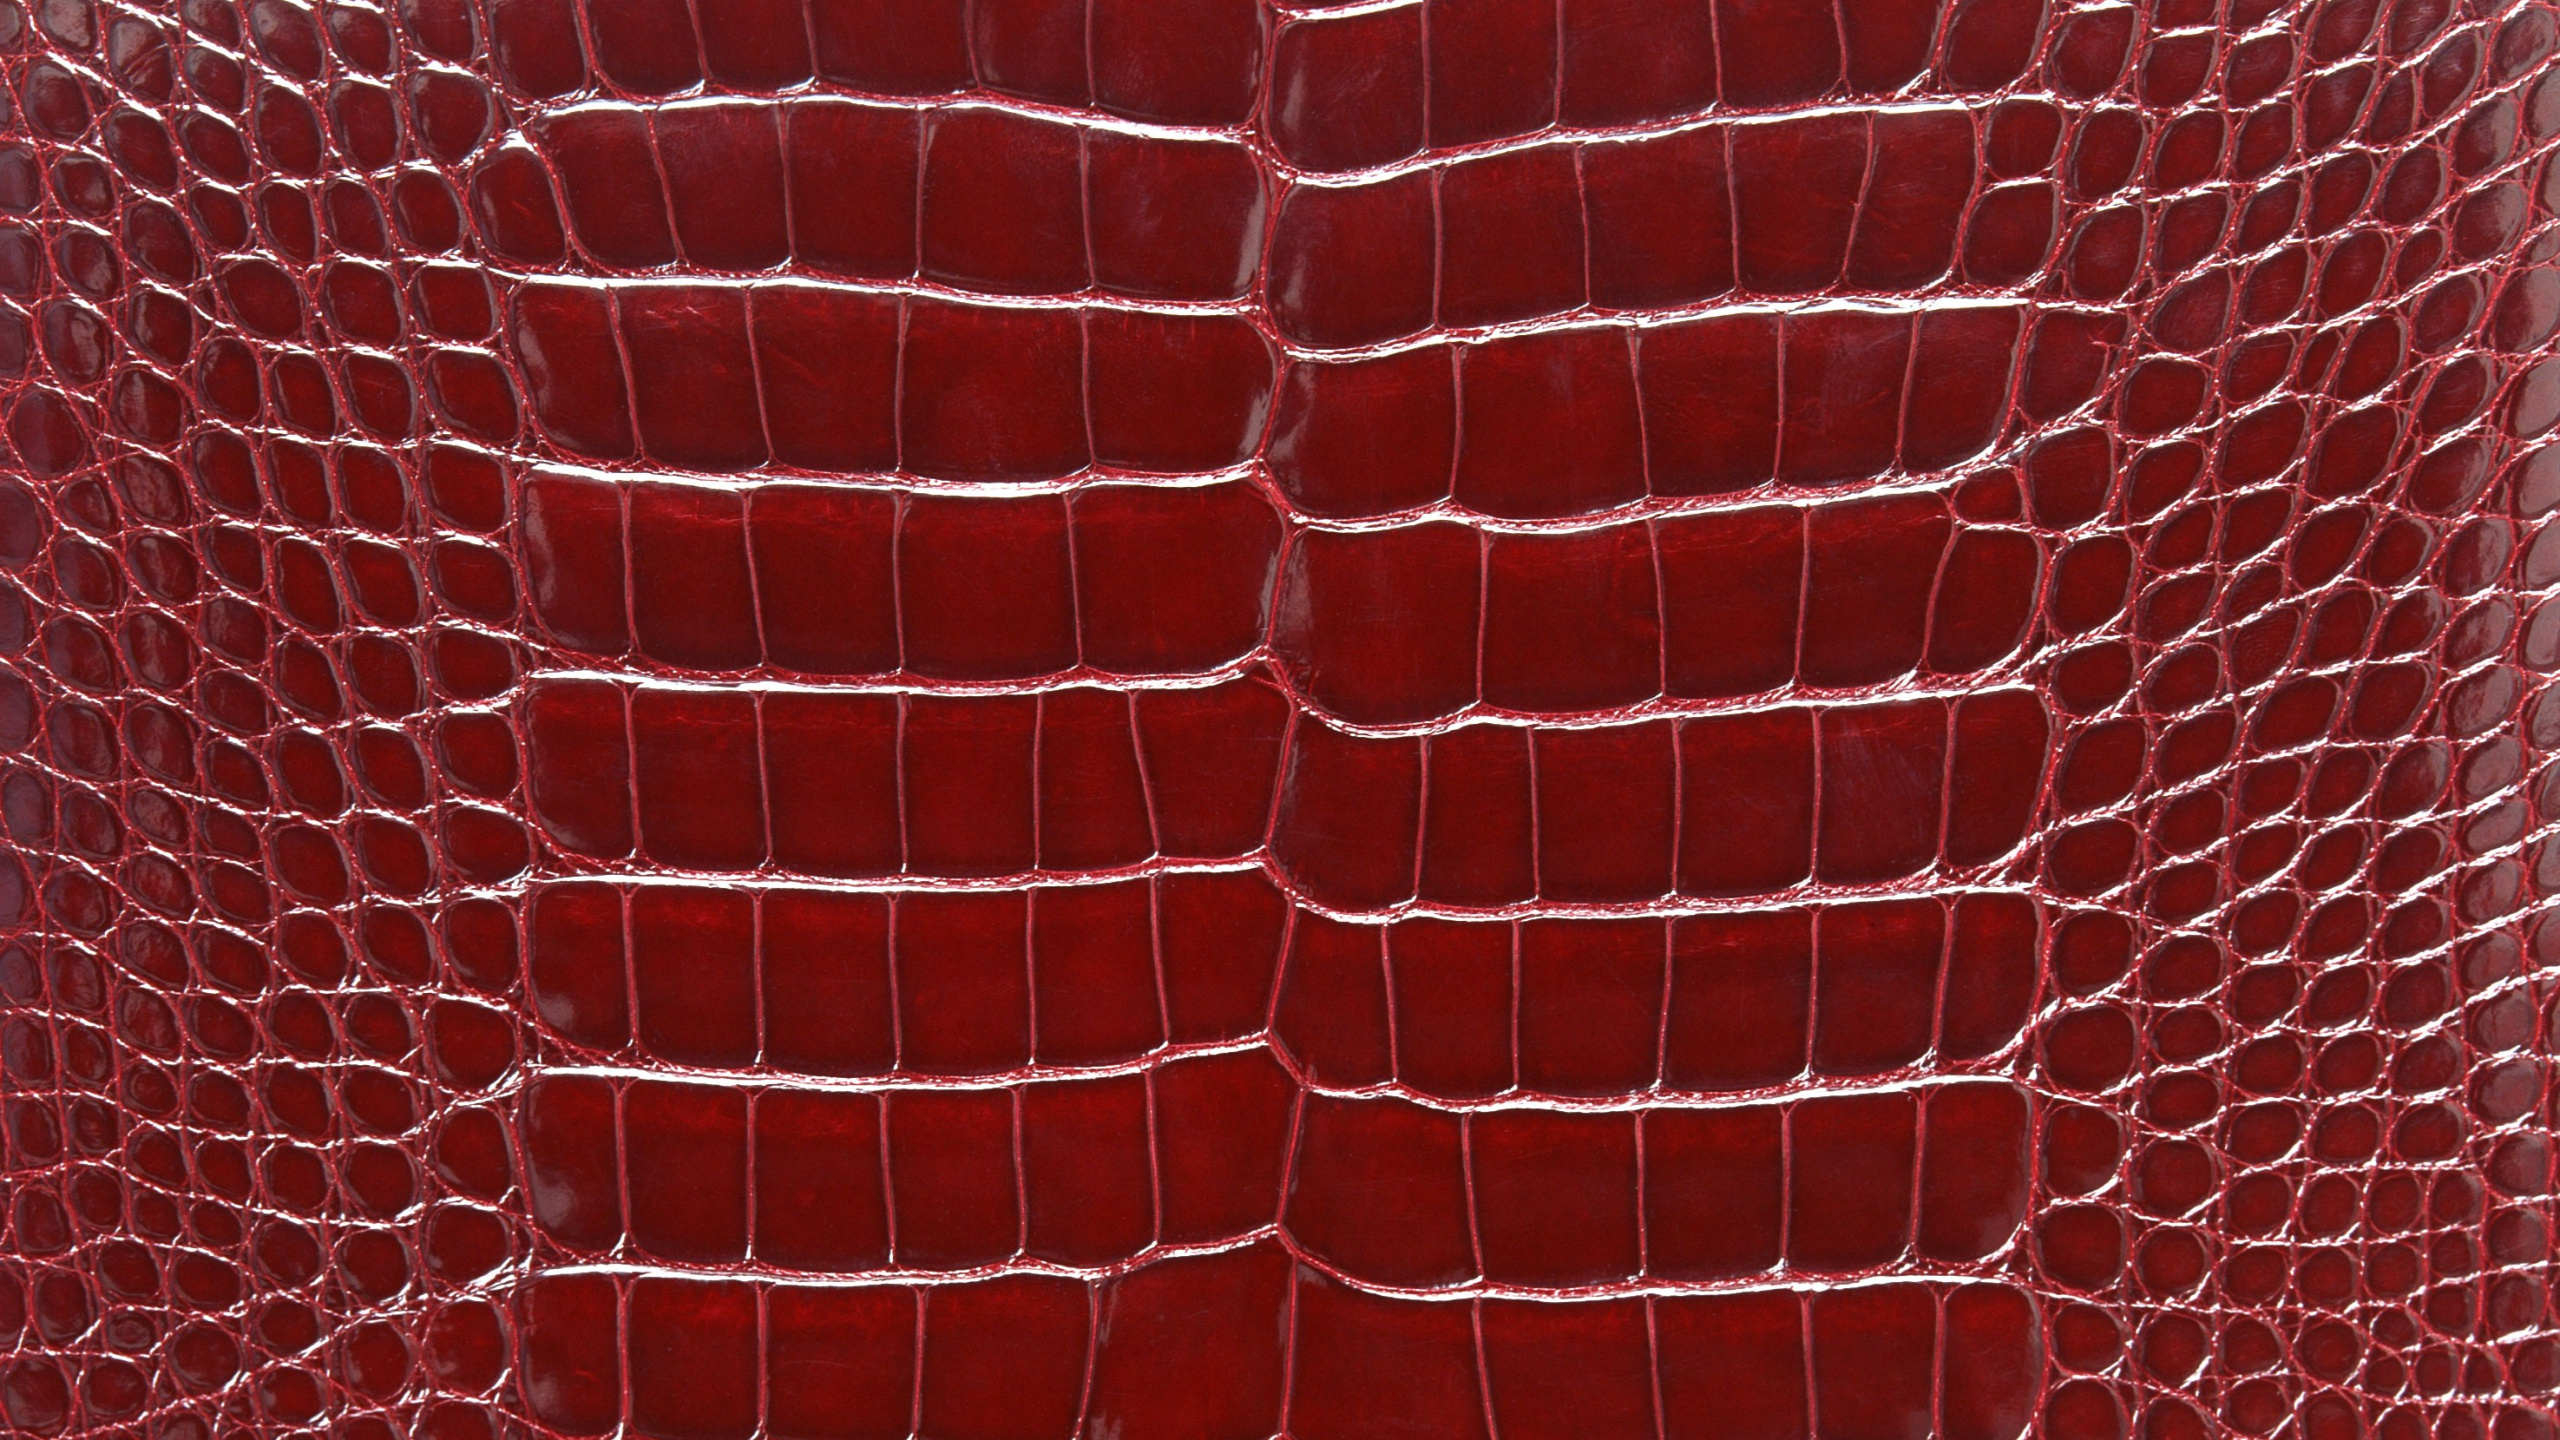 Textile à Carreaux Rouges et Blancs. Wallpaper in 2560x1440 Resolution